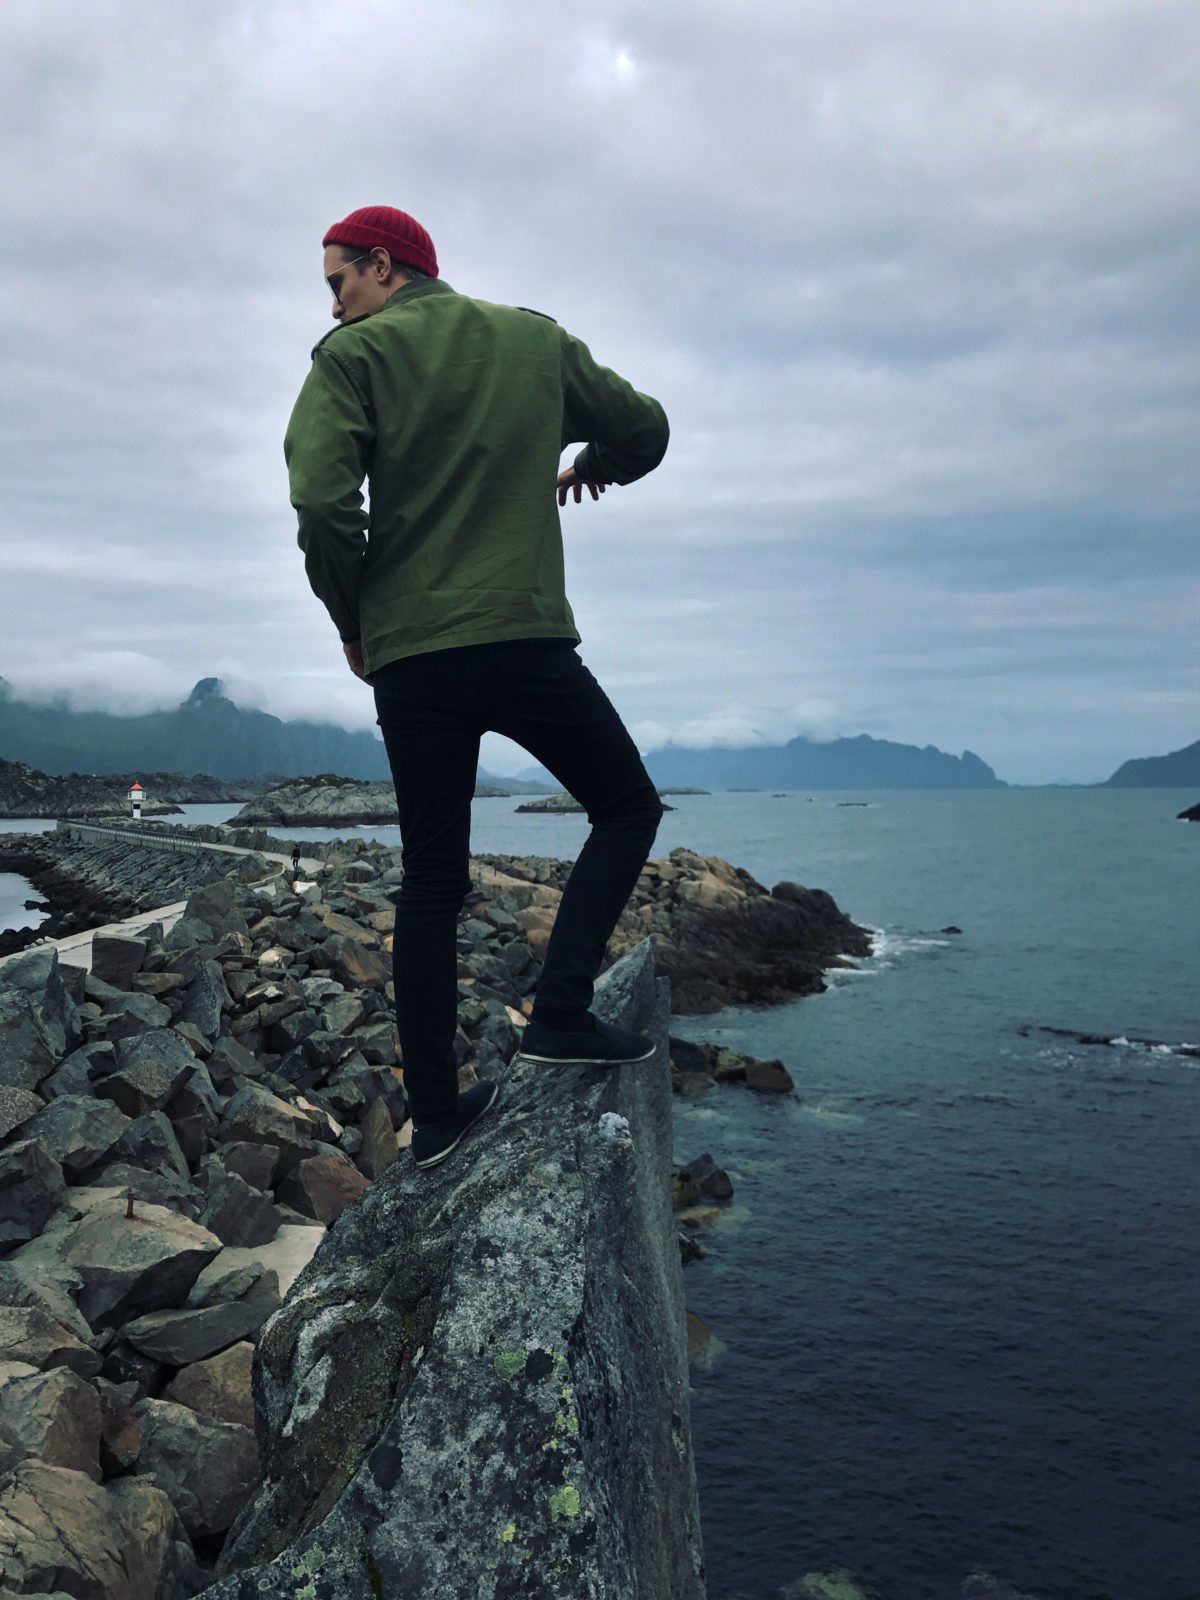 Climbing on a rock in Lofoten.